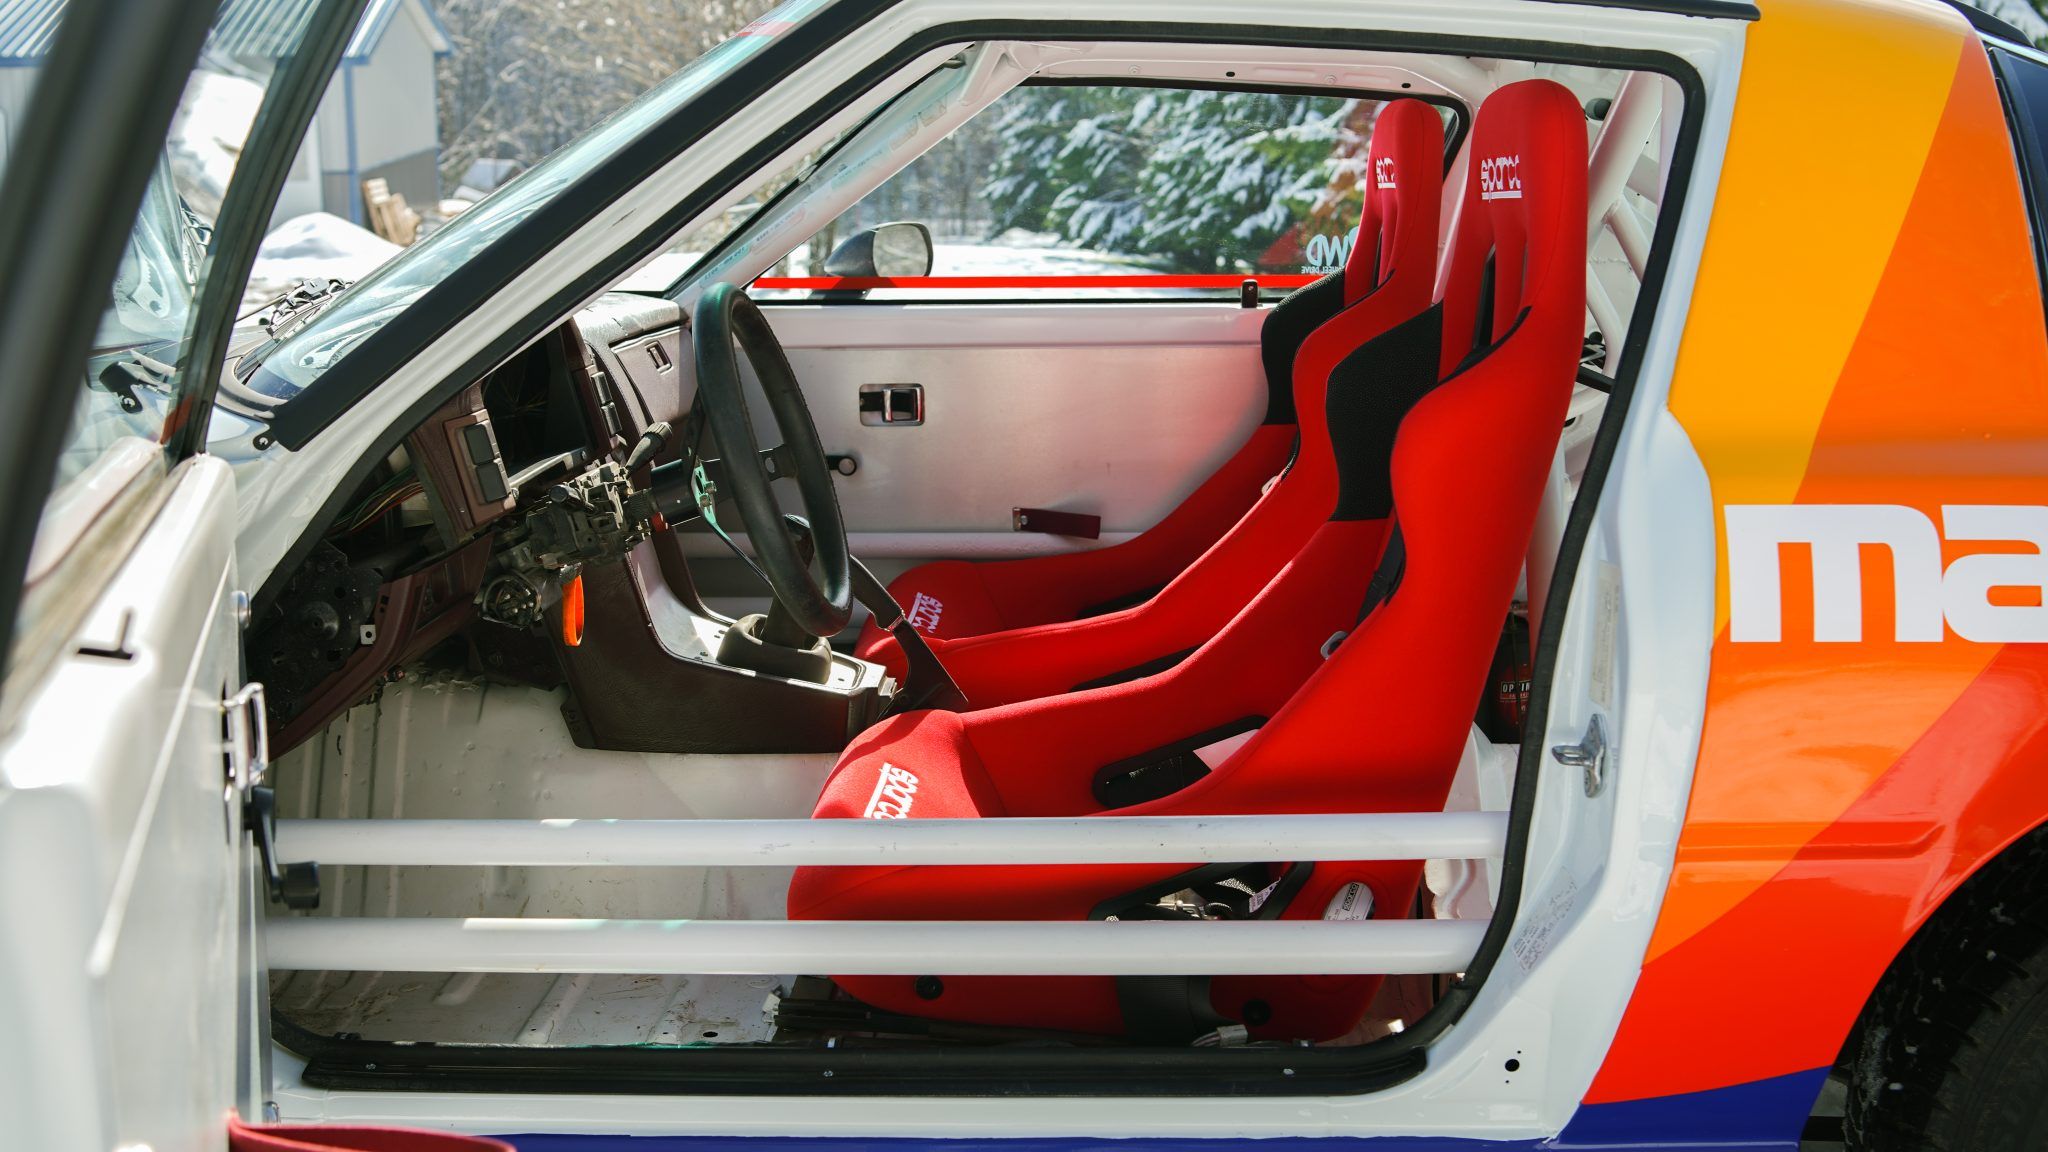 mazda rx7 modified interior